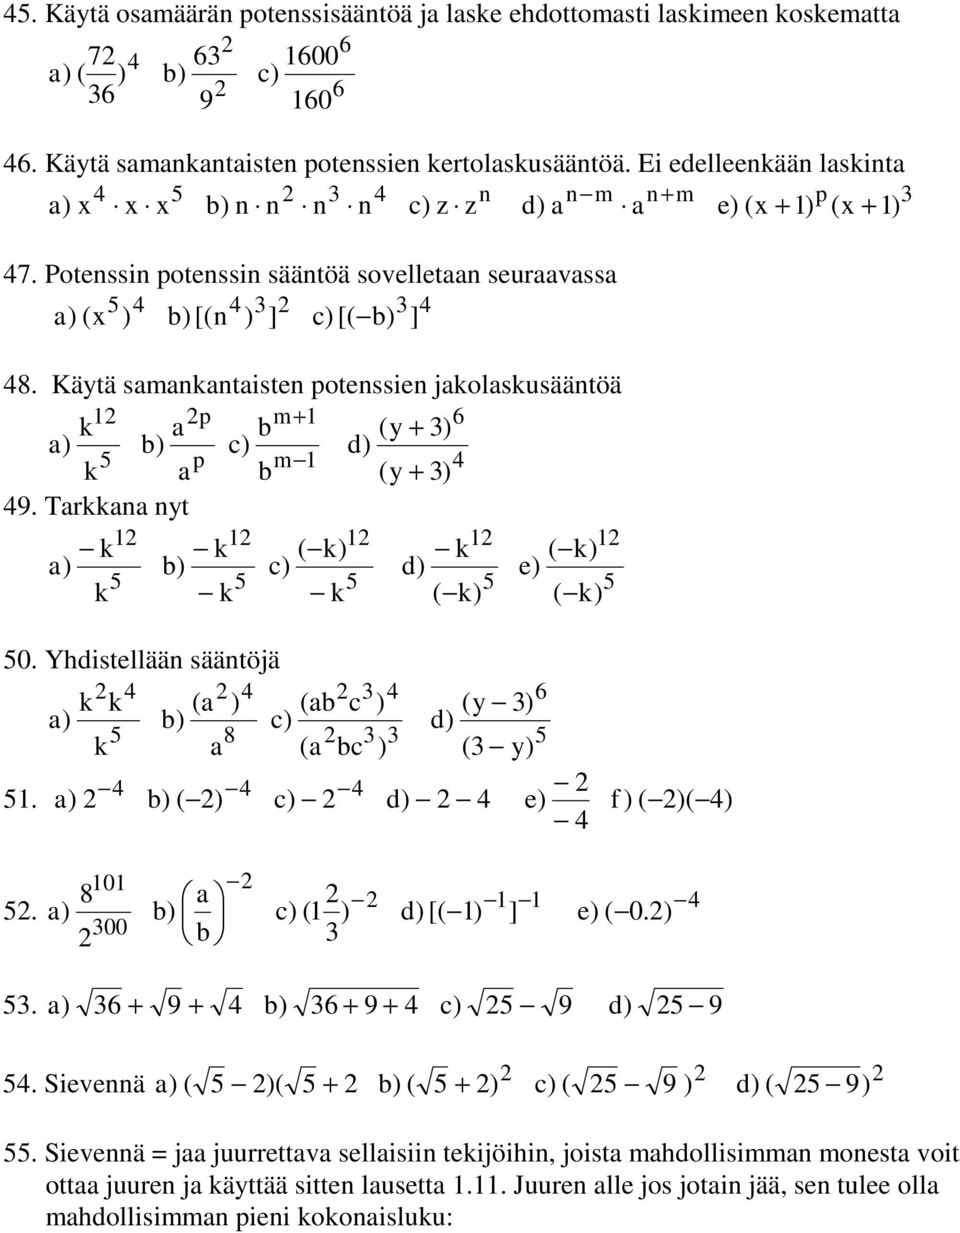 Käytä samankantaisten potenssien jakolaskusääntöä p m+ 6 k a b (y + ) b) c) d) p m k a b (y + ) 9. Tarkkana nyt k k ( k) k ( k) b) c) d) e) k k k ( k) ( k) 0.